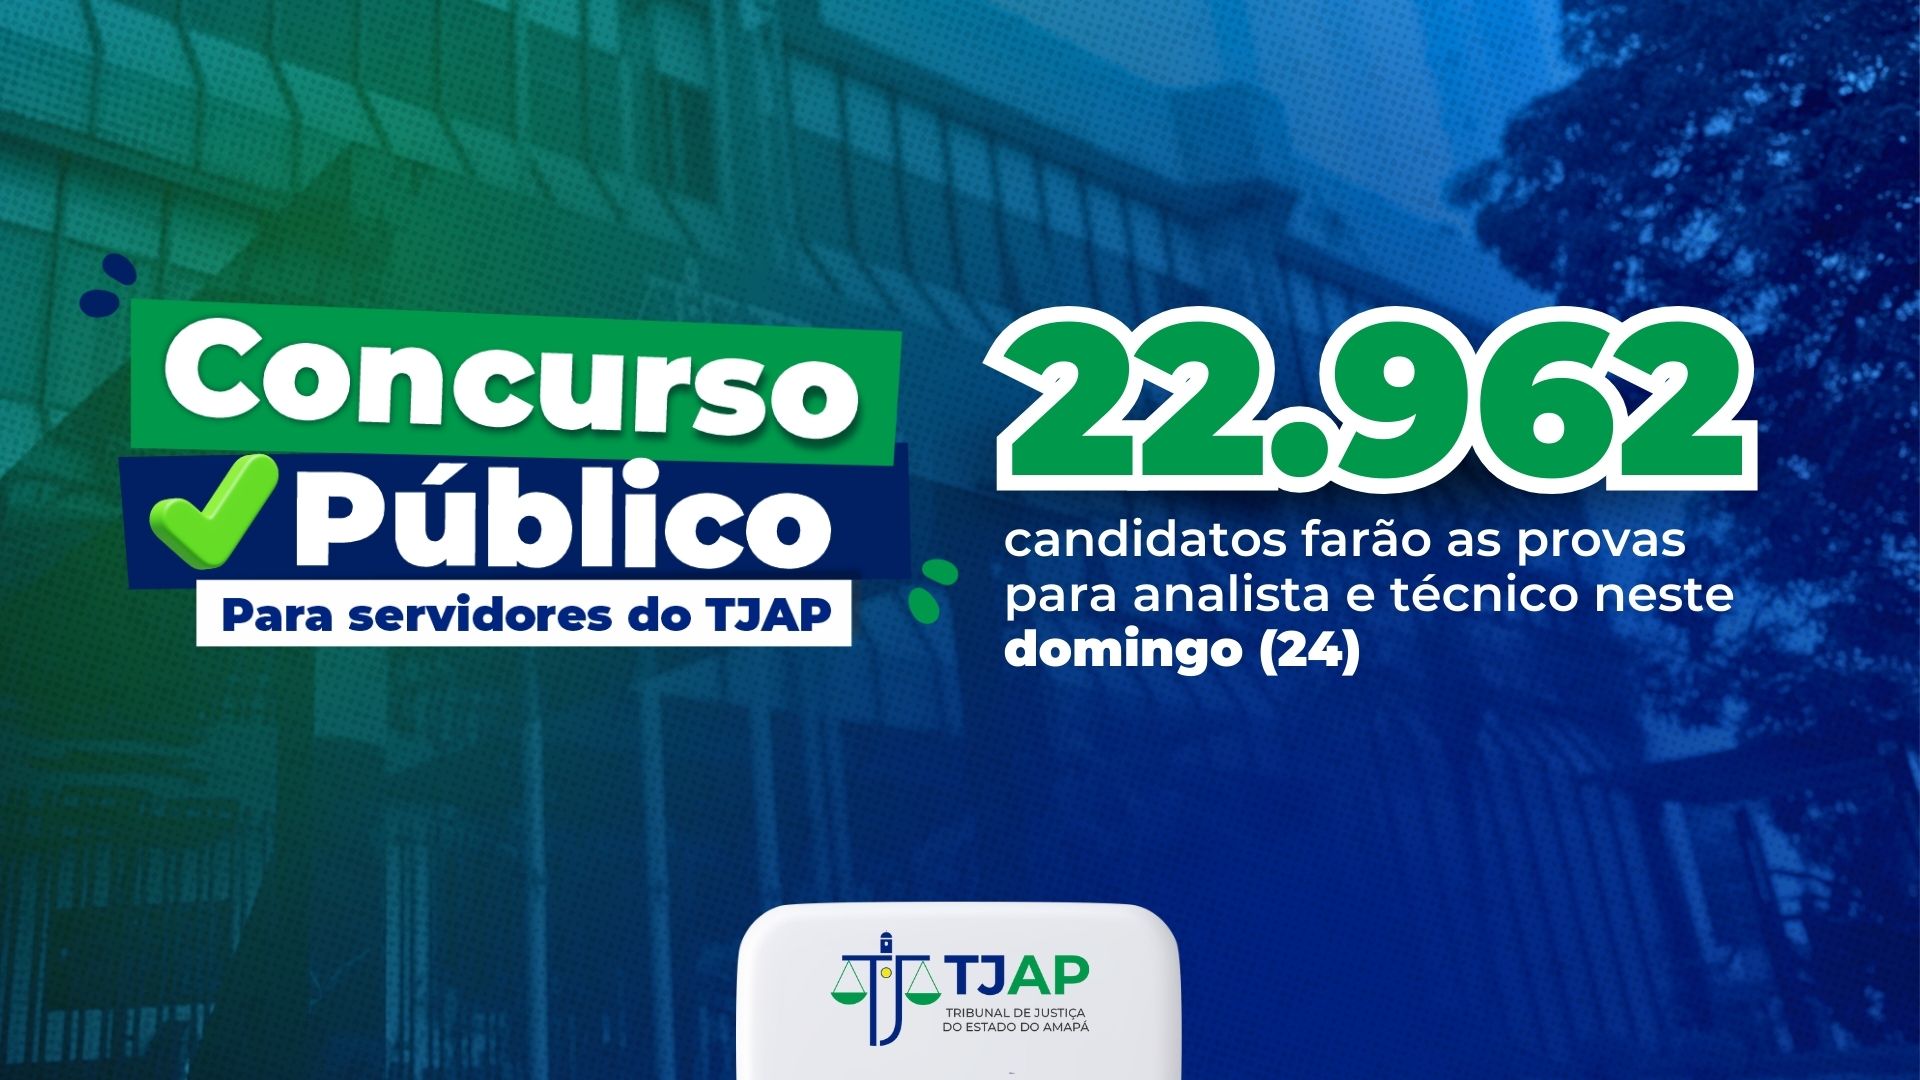 Ilustração azul e verde com os dizeres "Concurso Público para Servidores do TJAP: 22.962 candidatos farão as provas para analista e técnico neste domingo (24)"